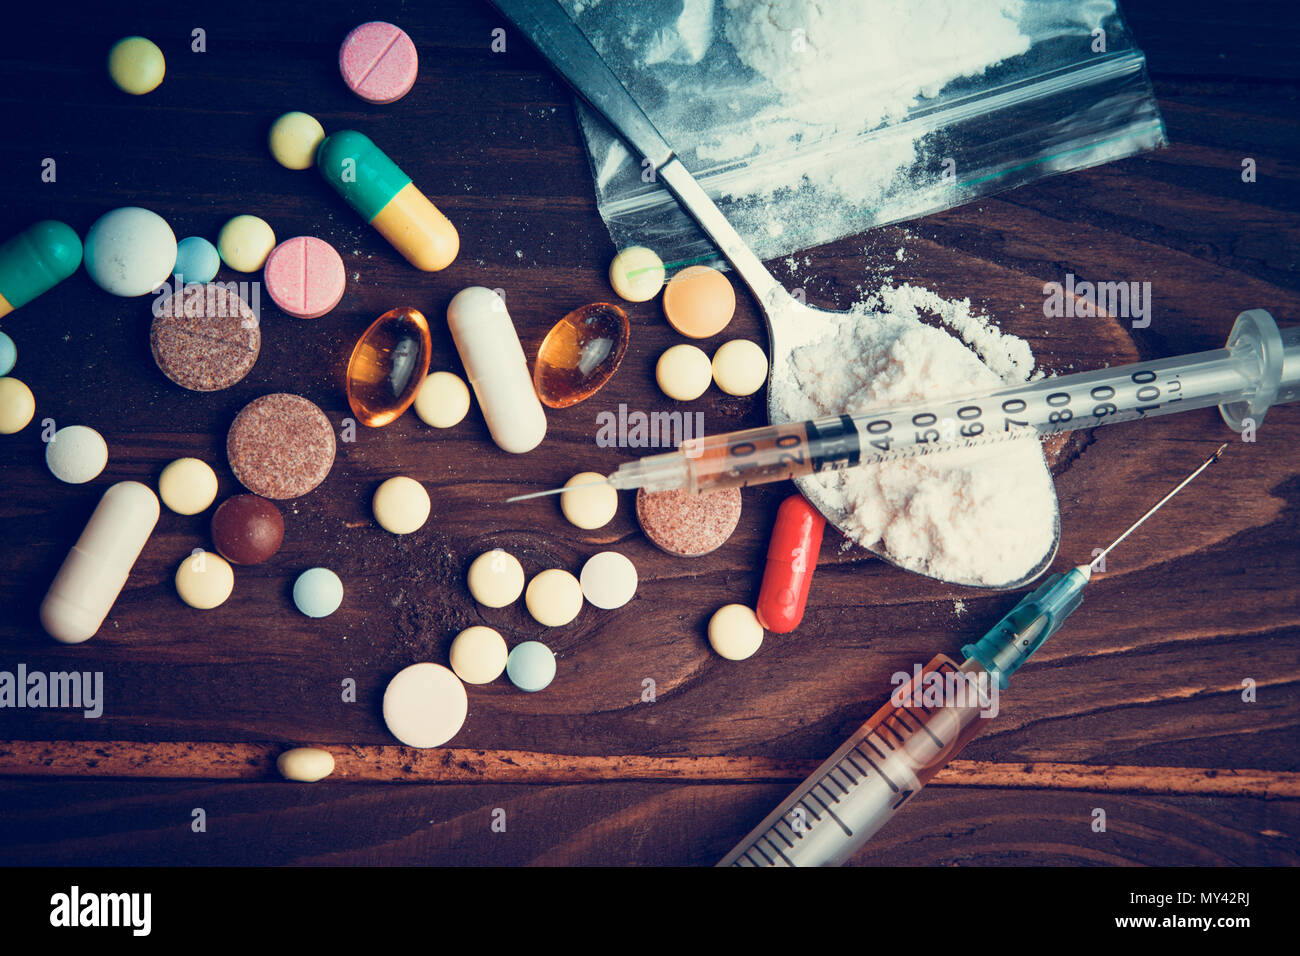 Droge Konzept. Verwenden Sie den illegalen Drogenmissbrauch. Sucht Heroin. Einspritzanlage, Doping. Opium Epidemie. Toning, selektive konzentrieren. Stockfoto